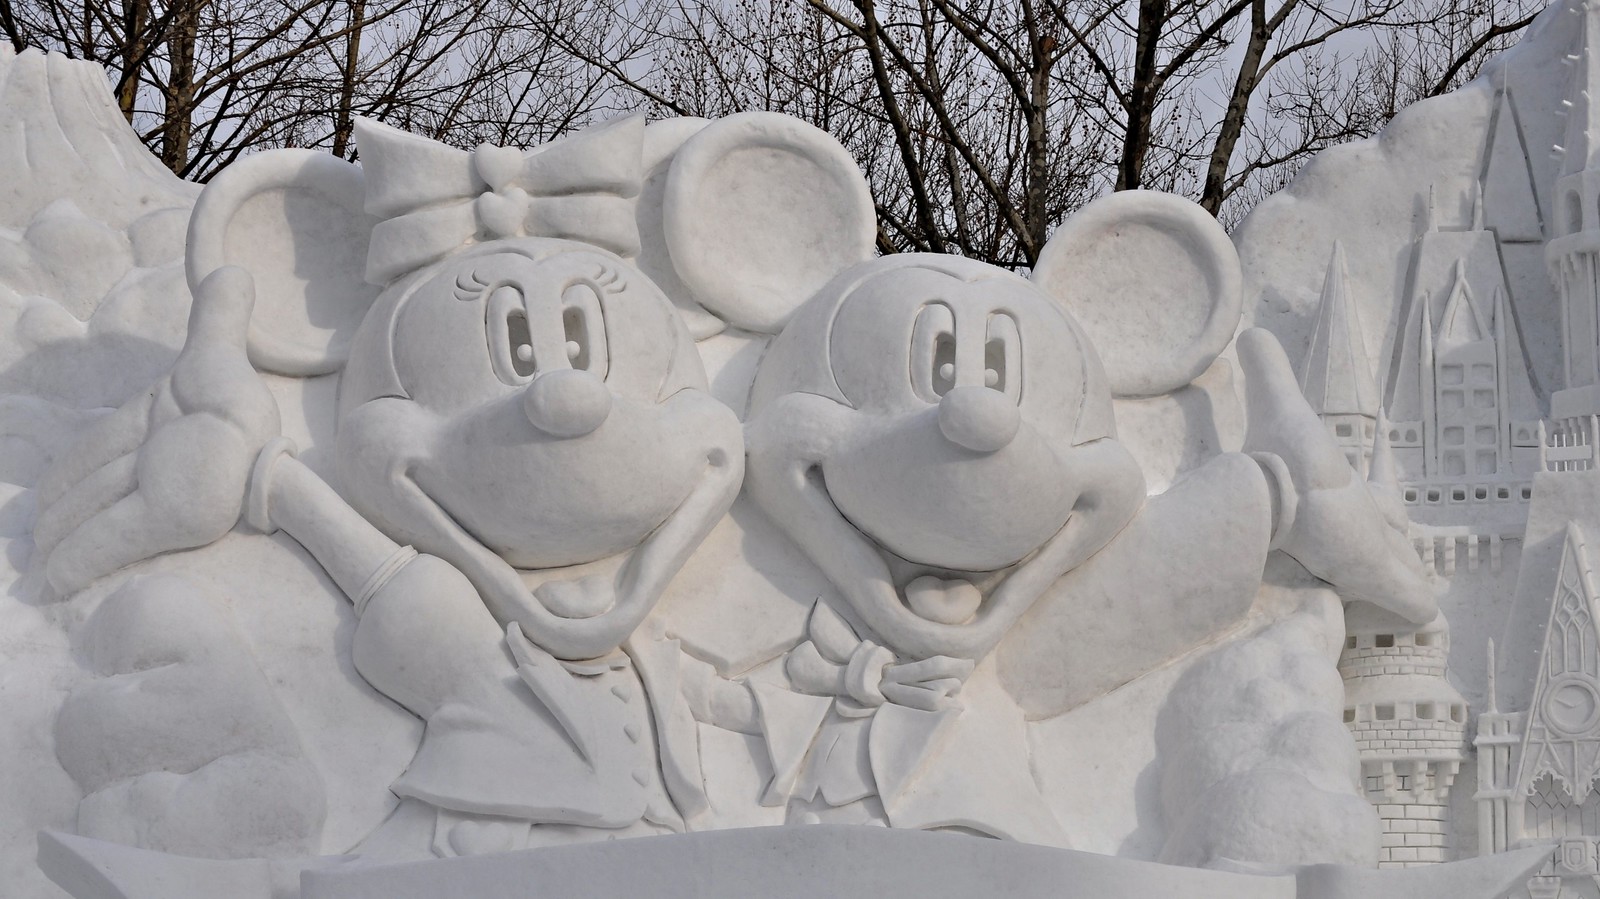 Winter Fun At Sapporo Snow Festival